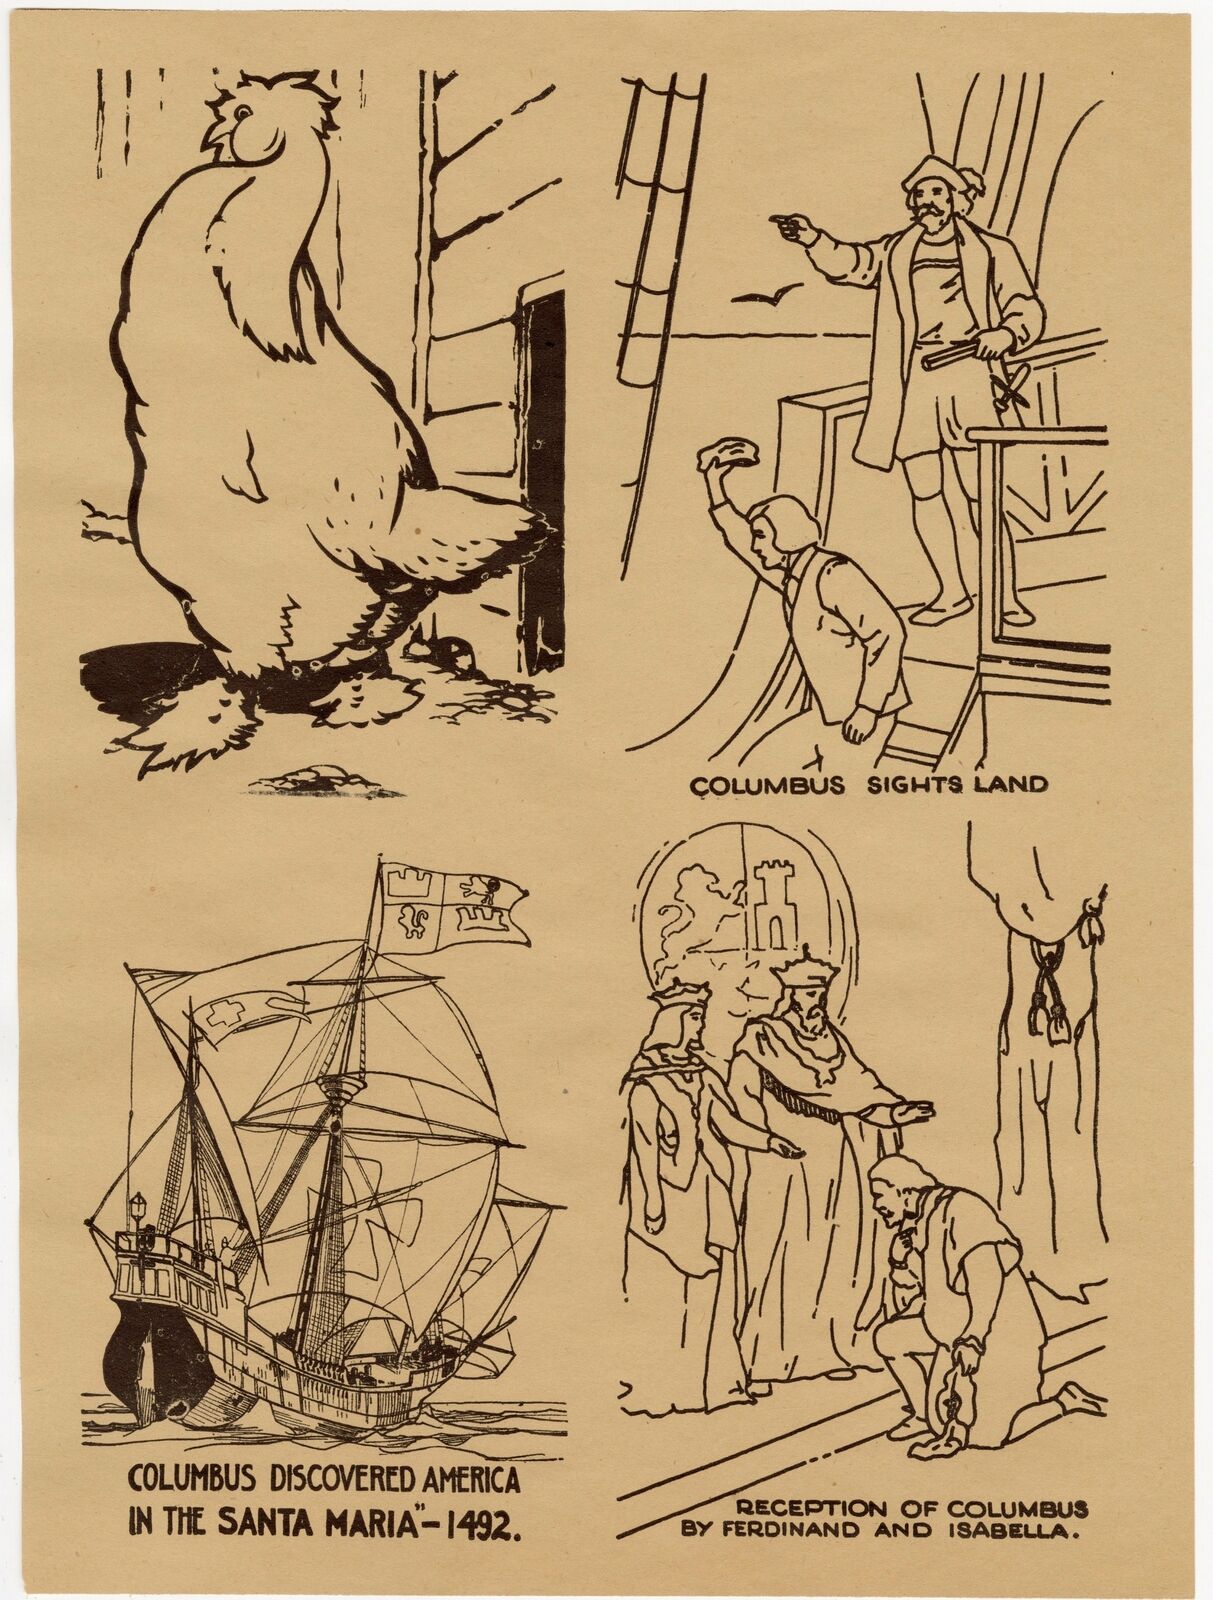 1942 Antique MARCH OF PROGRESS Art Education, Print Set, Children's Game Ograniczona wyprzedaż, świetne okazje